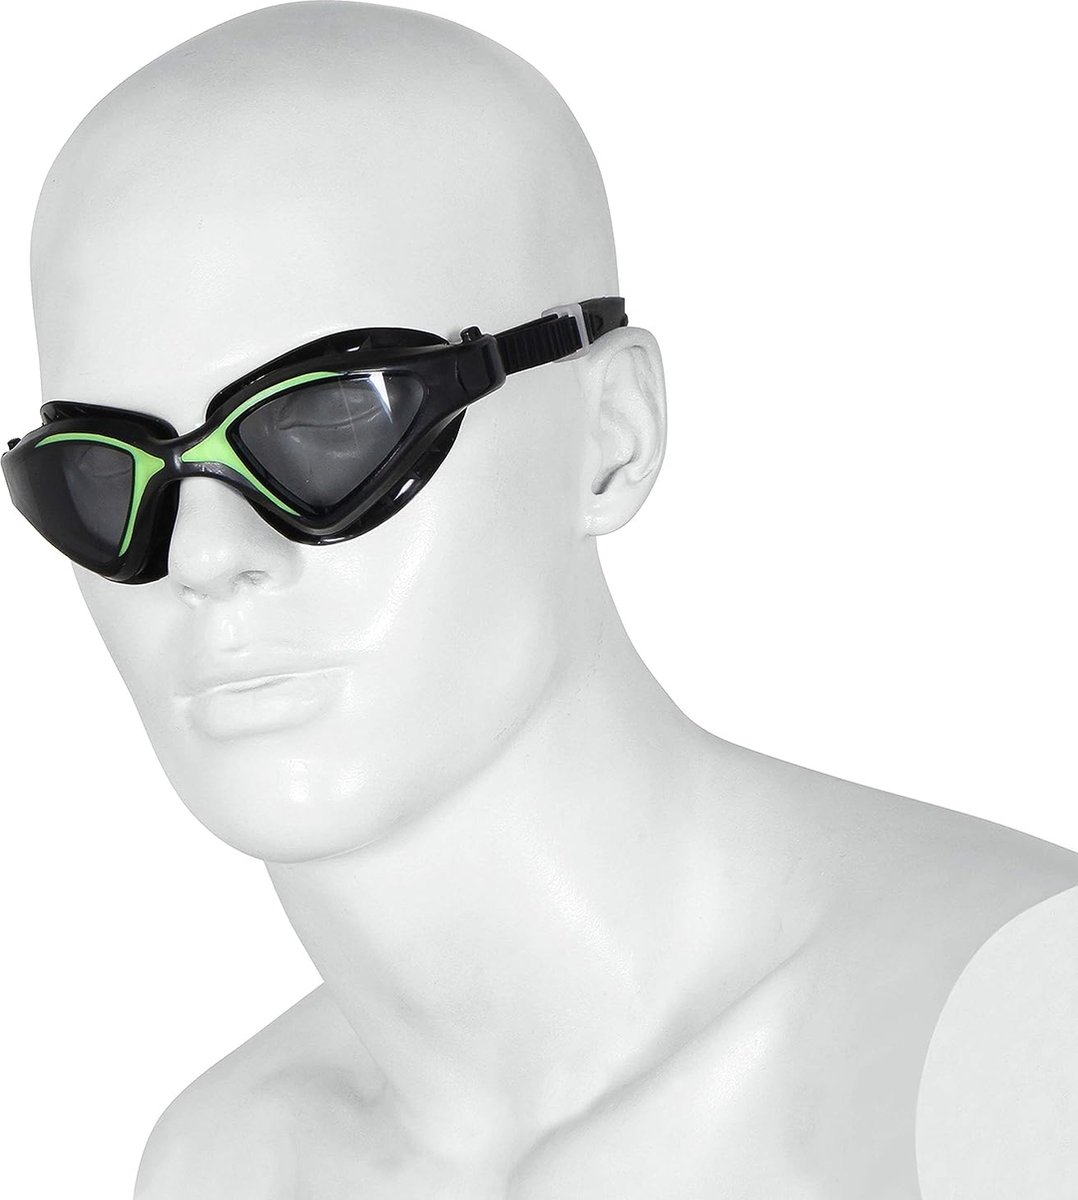 Nivia Unicore Swimming Goggles (zwart/groen)